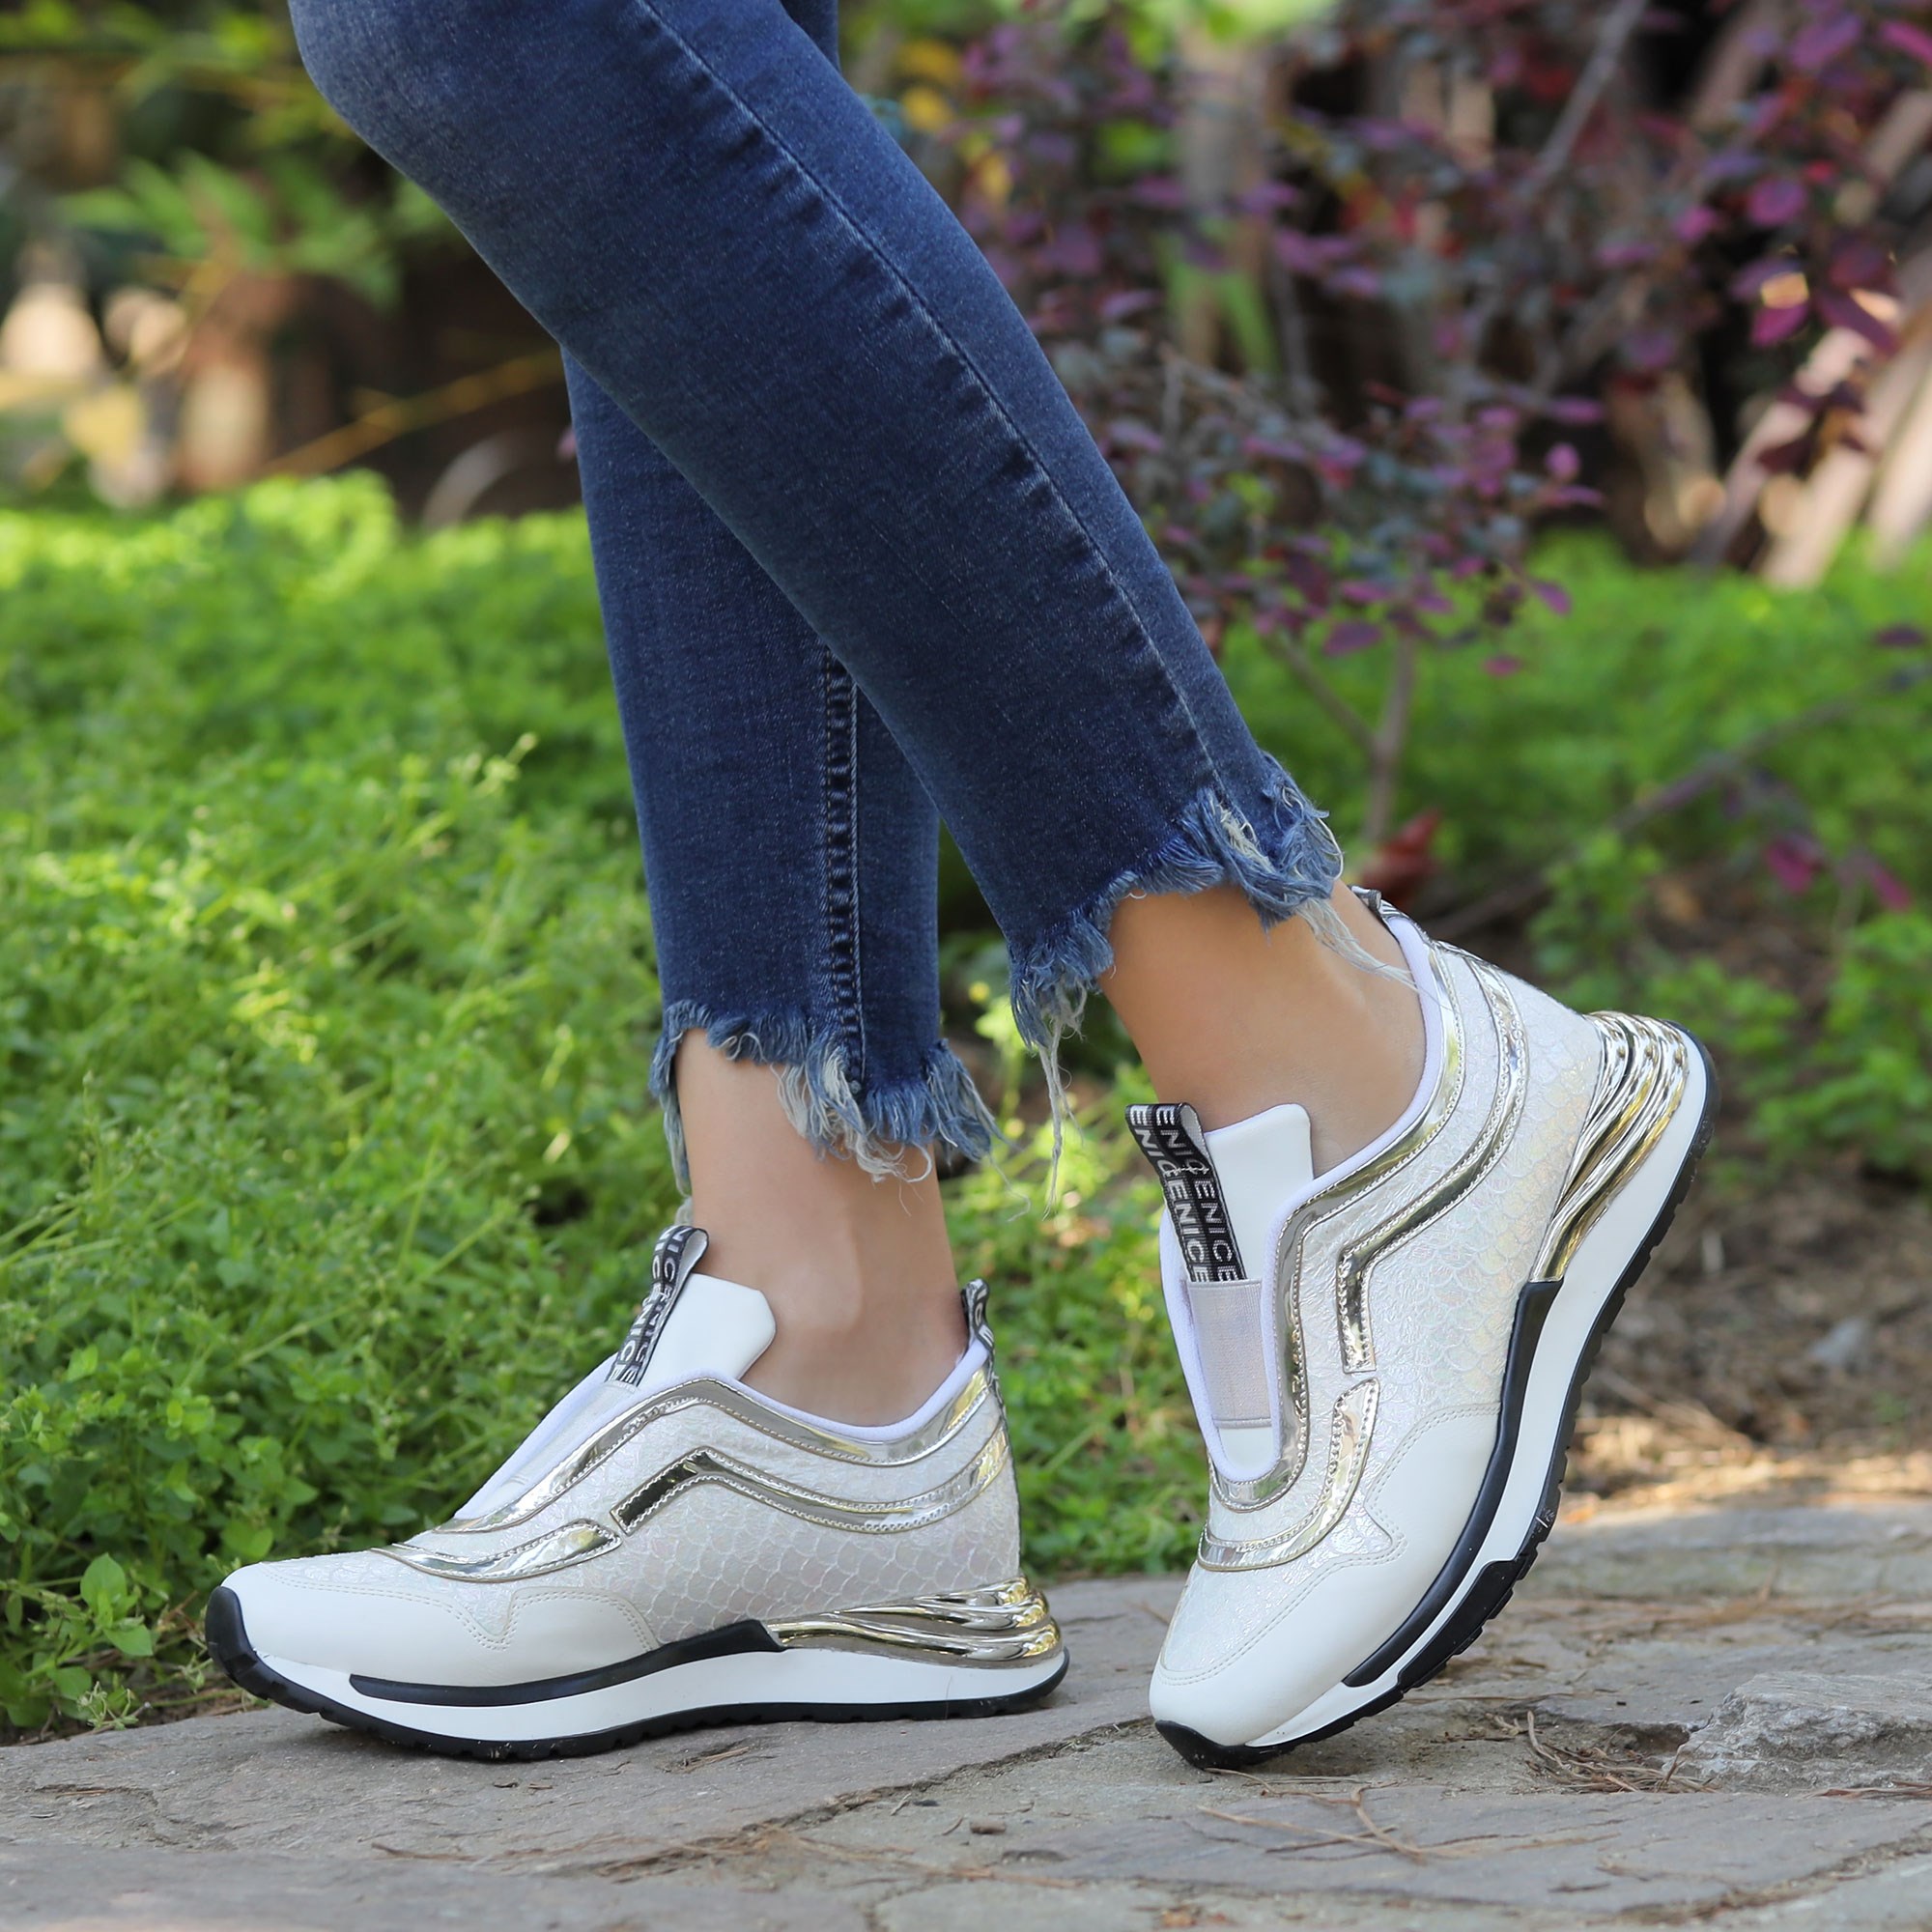 Horge Beyaz Bağcıksız Kadın Spor Ayakkabı